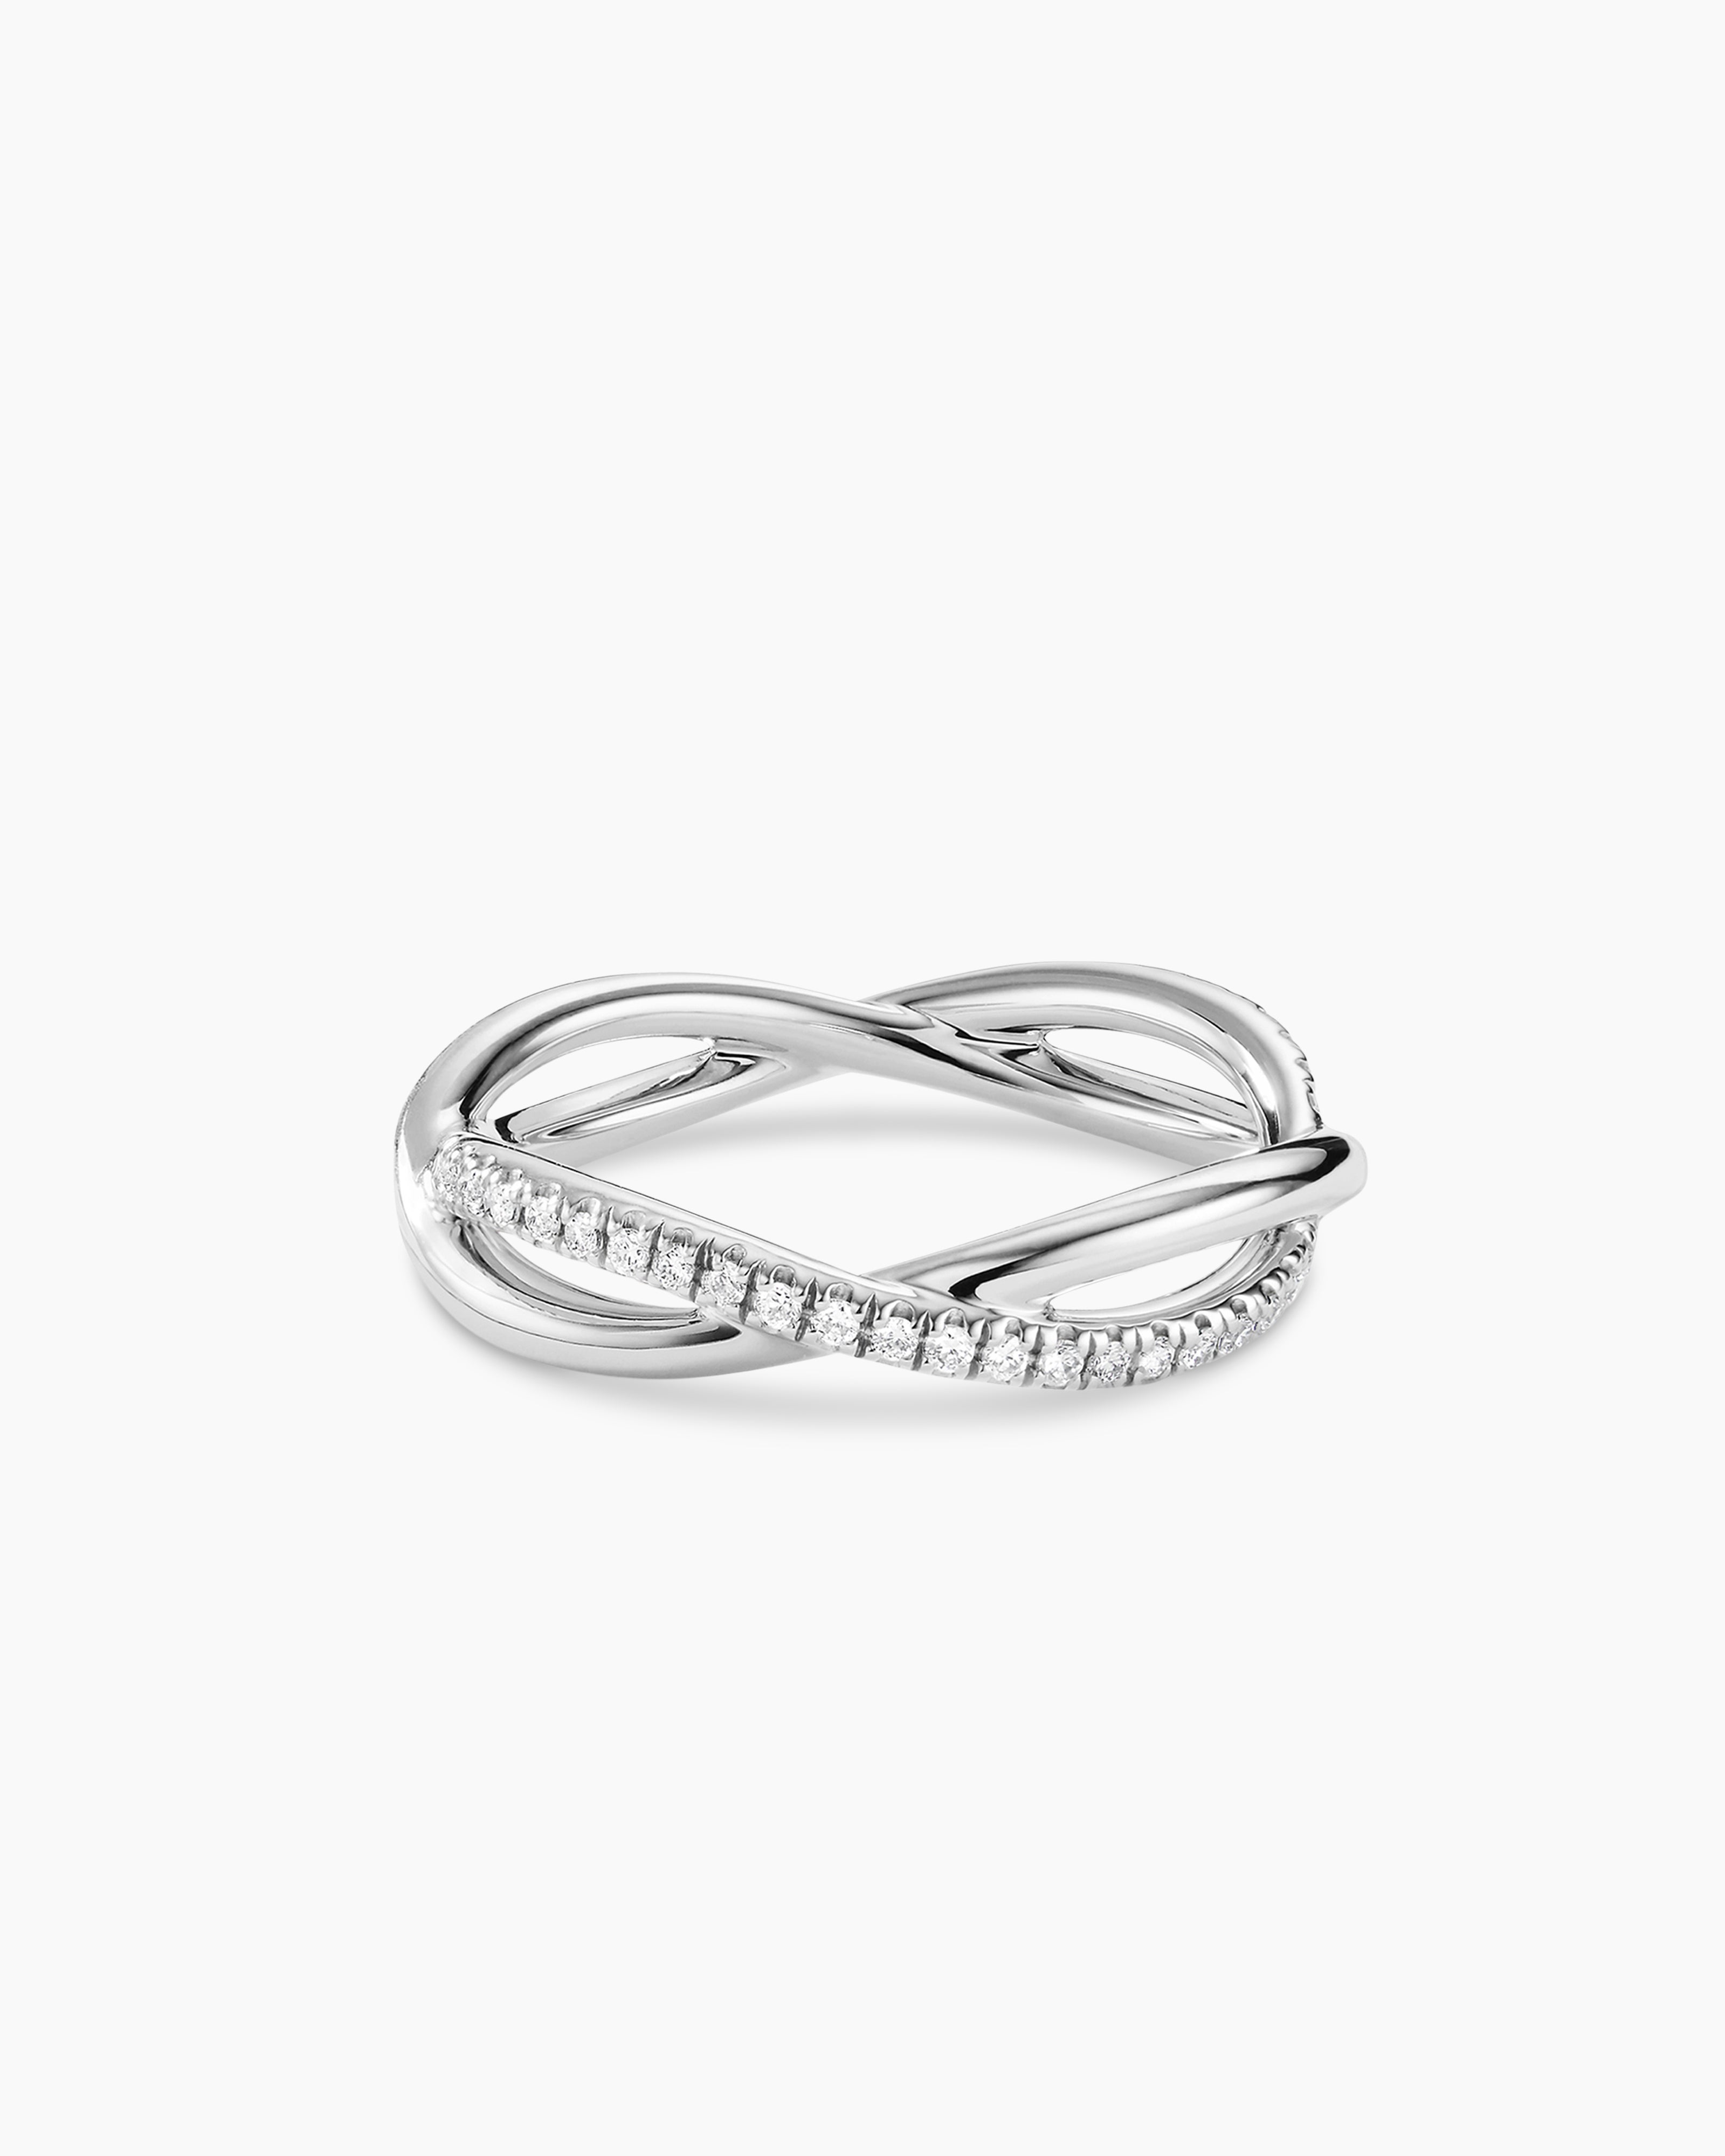 Infinity round brilliant diamond ring in platinum | De Beers AT